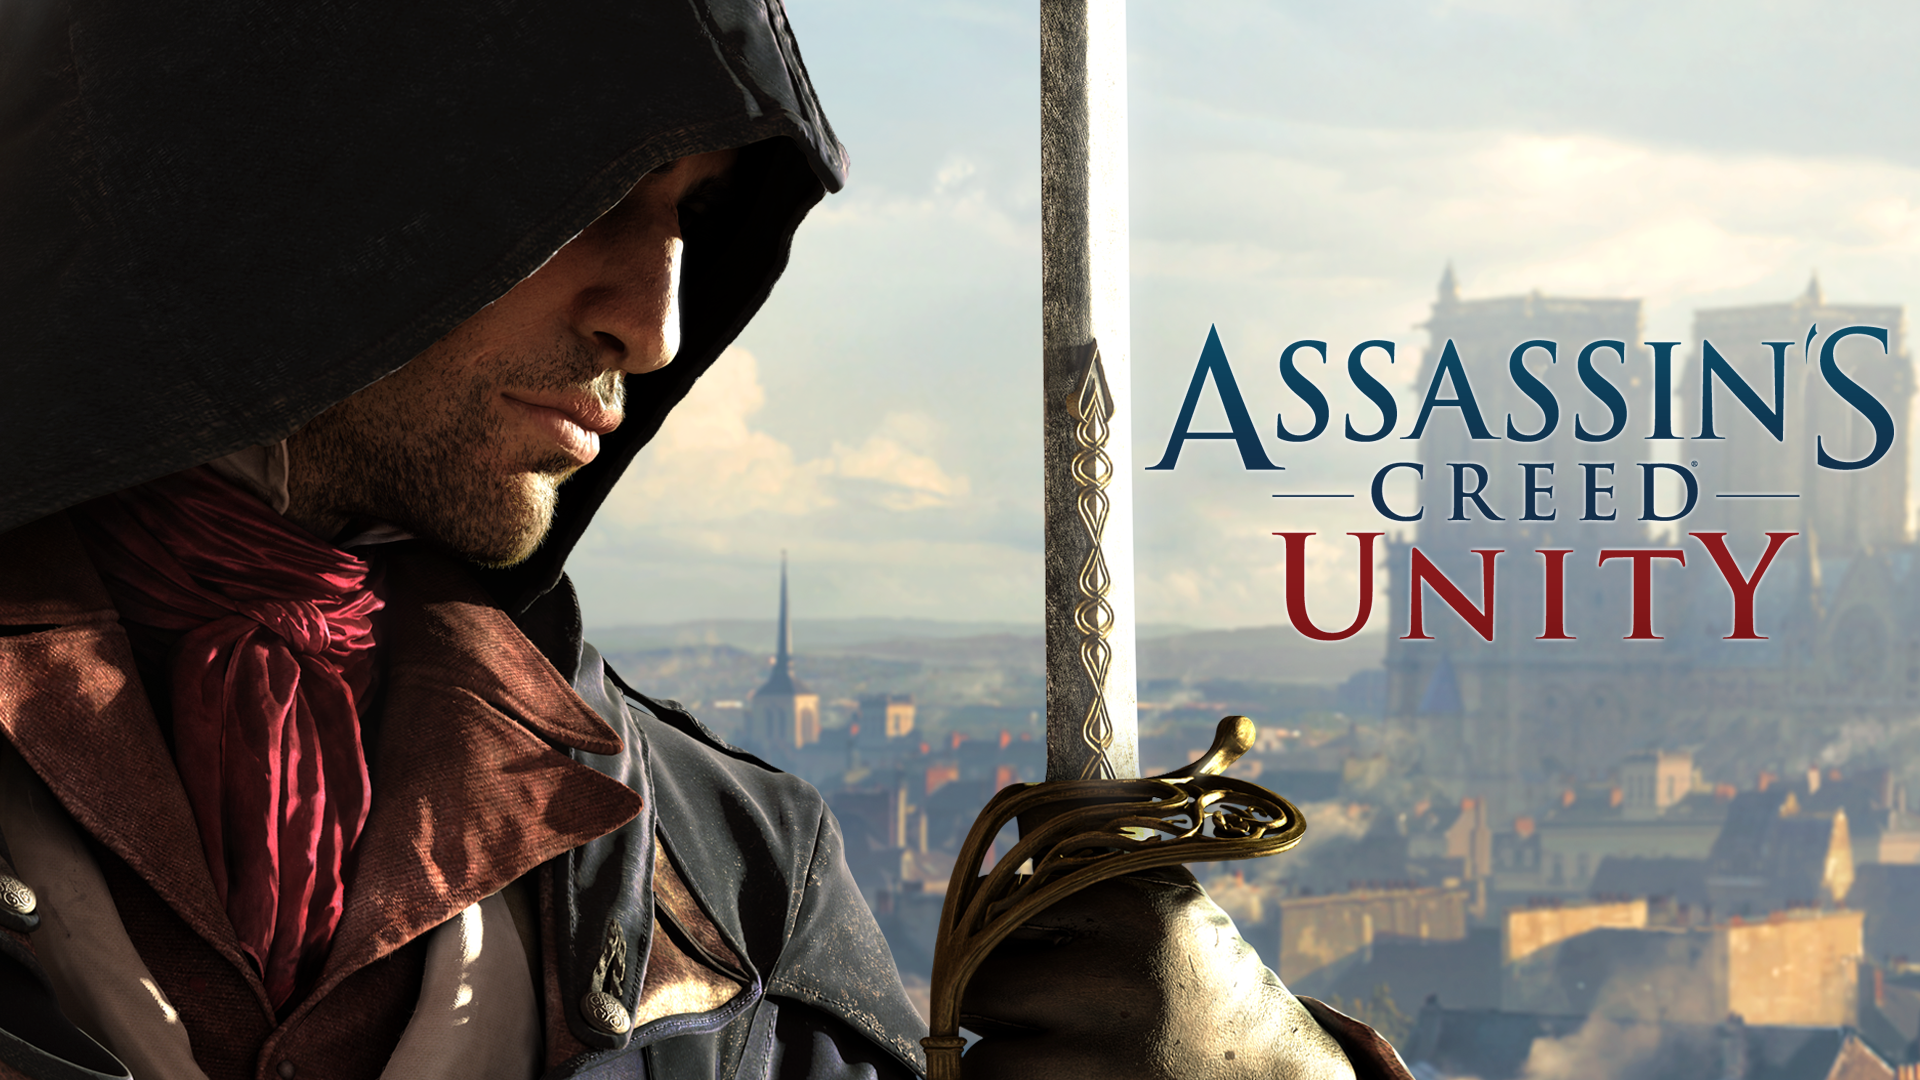 Assassins creed: unity. прохождение игры на 100%. главы 1, 2, 3, 4